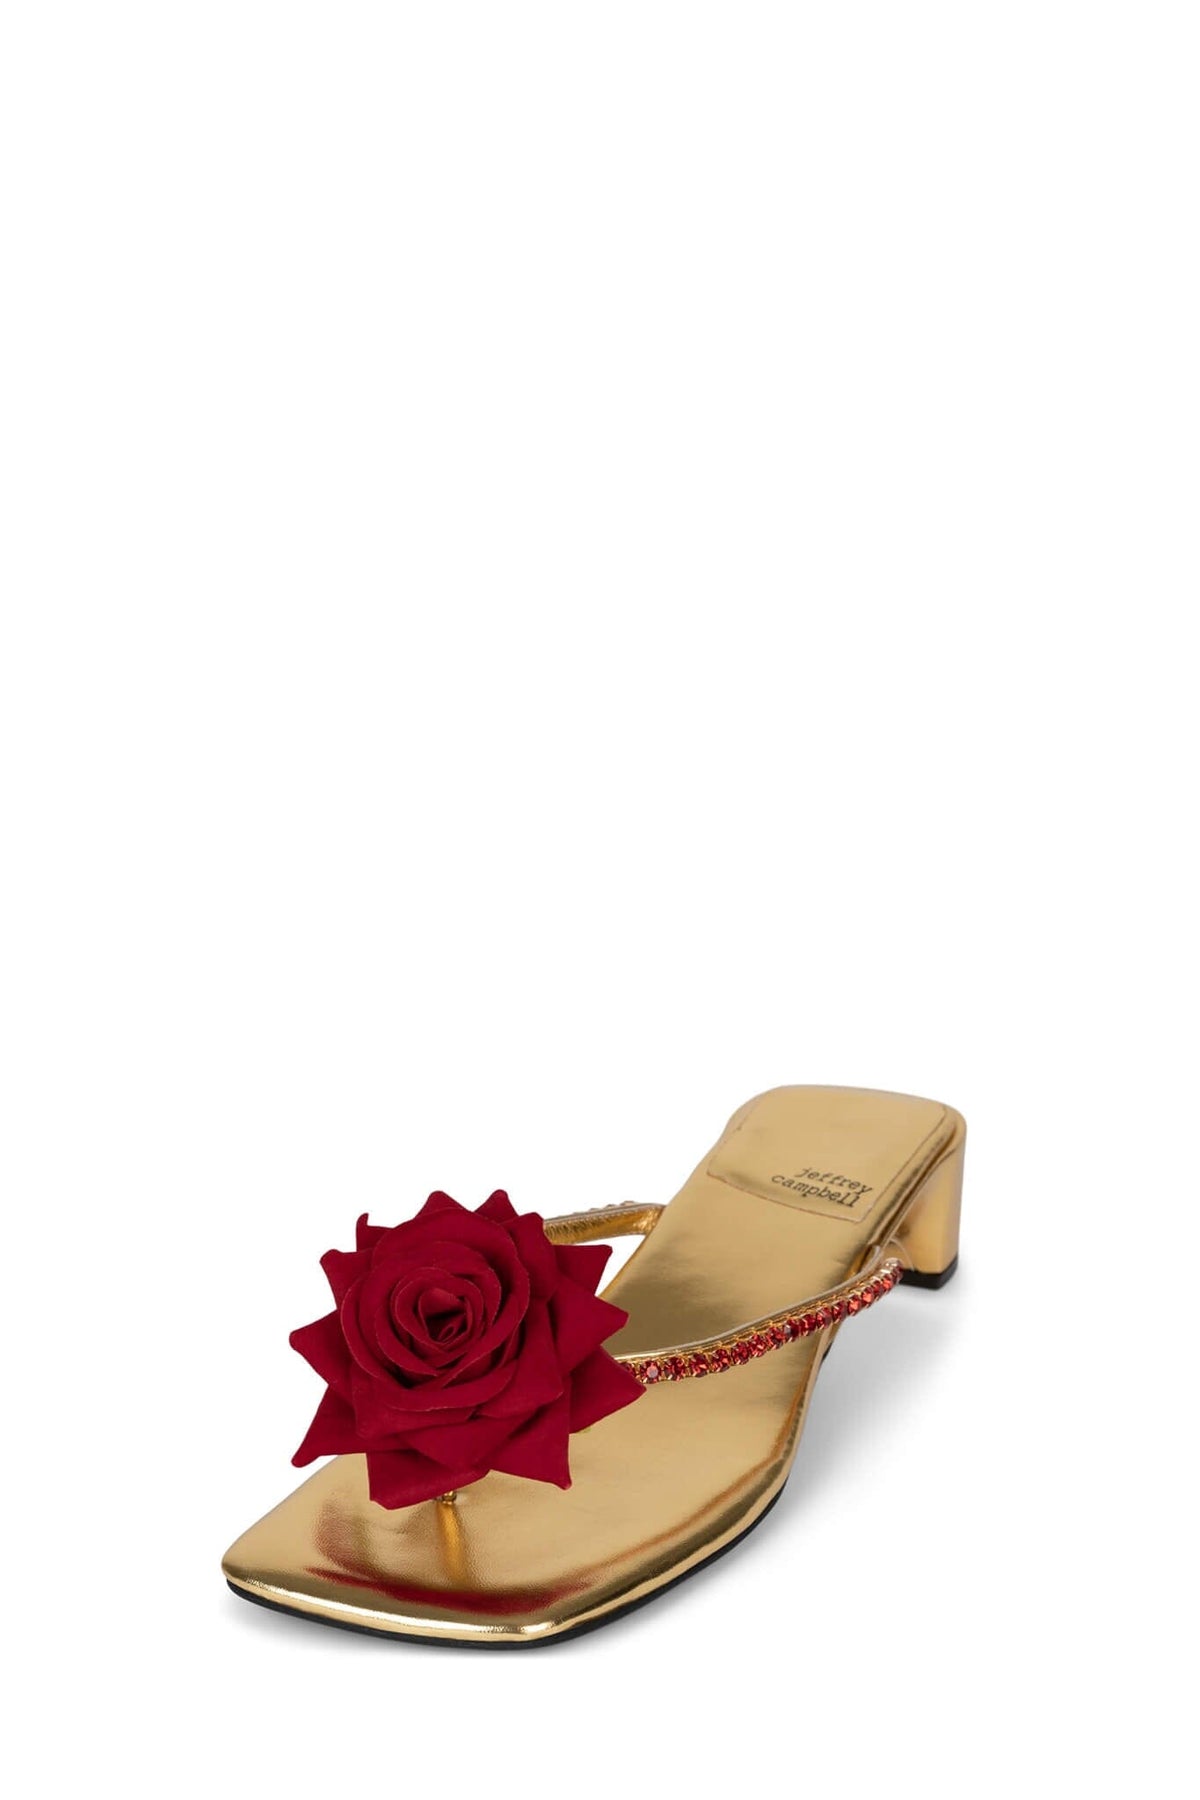 PRIMROSE Jeffrey Campbell Kitten Heel Sandal Gold Metallic Red